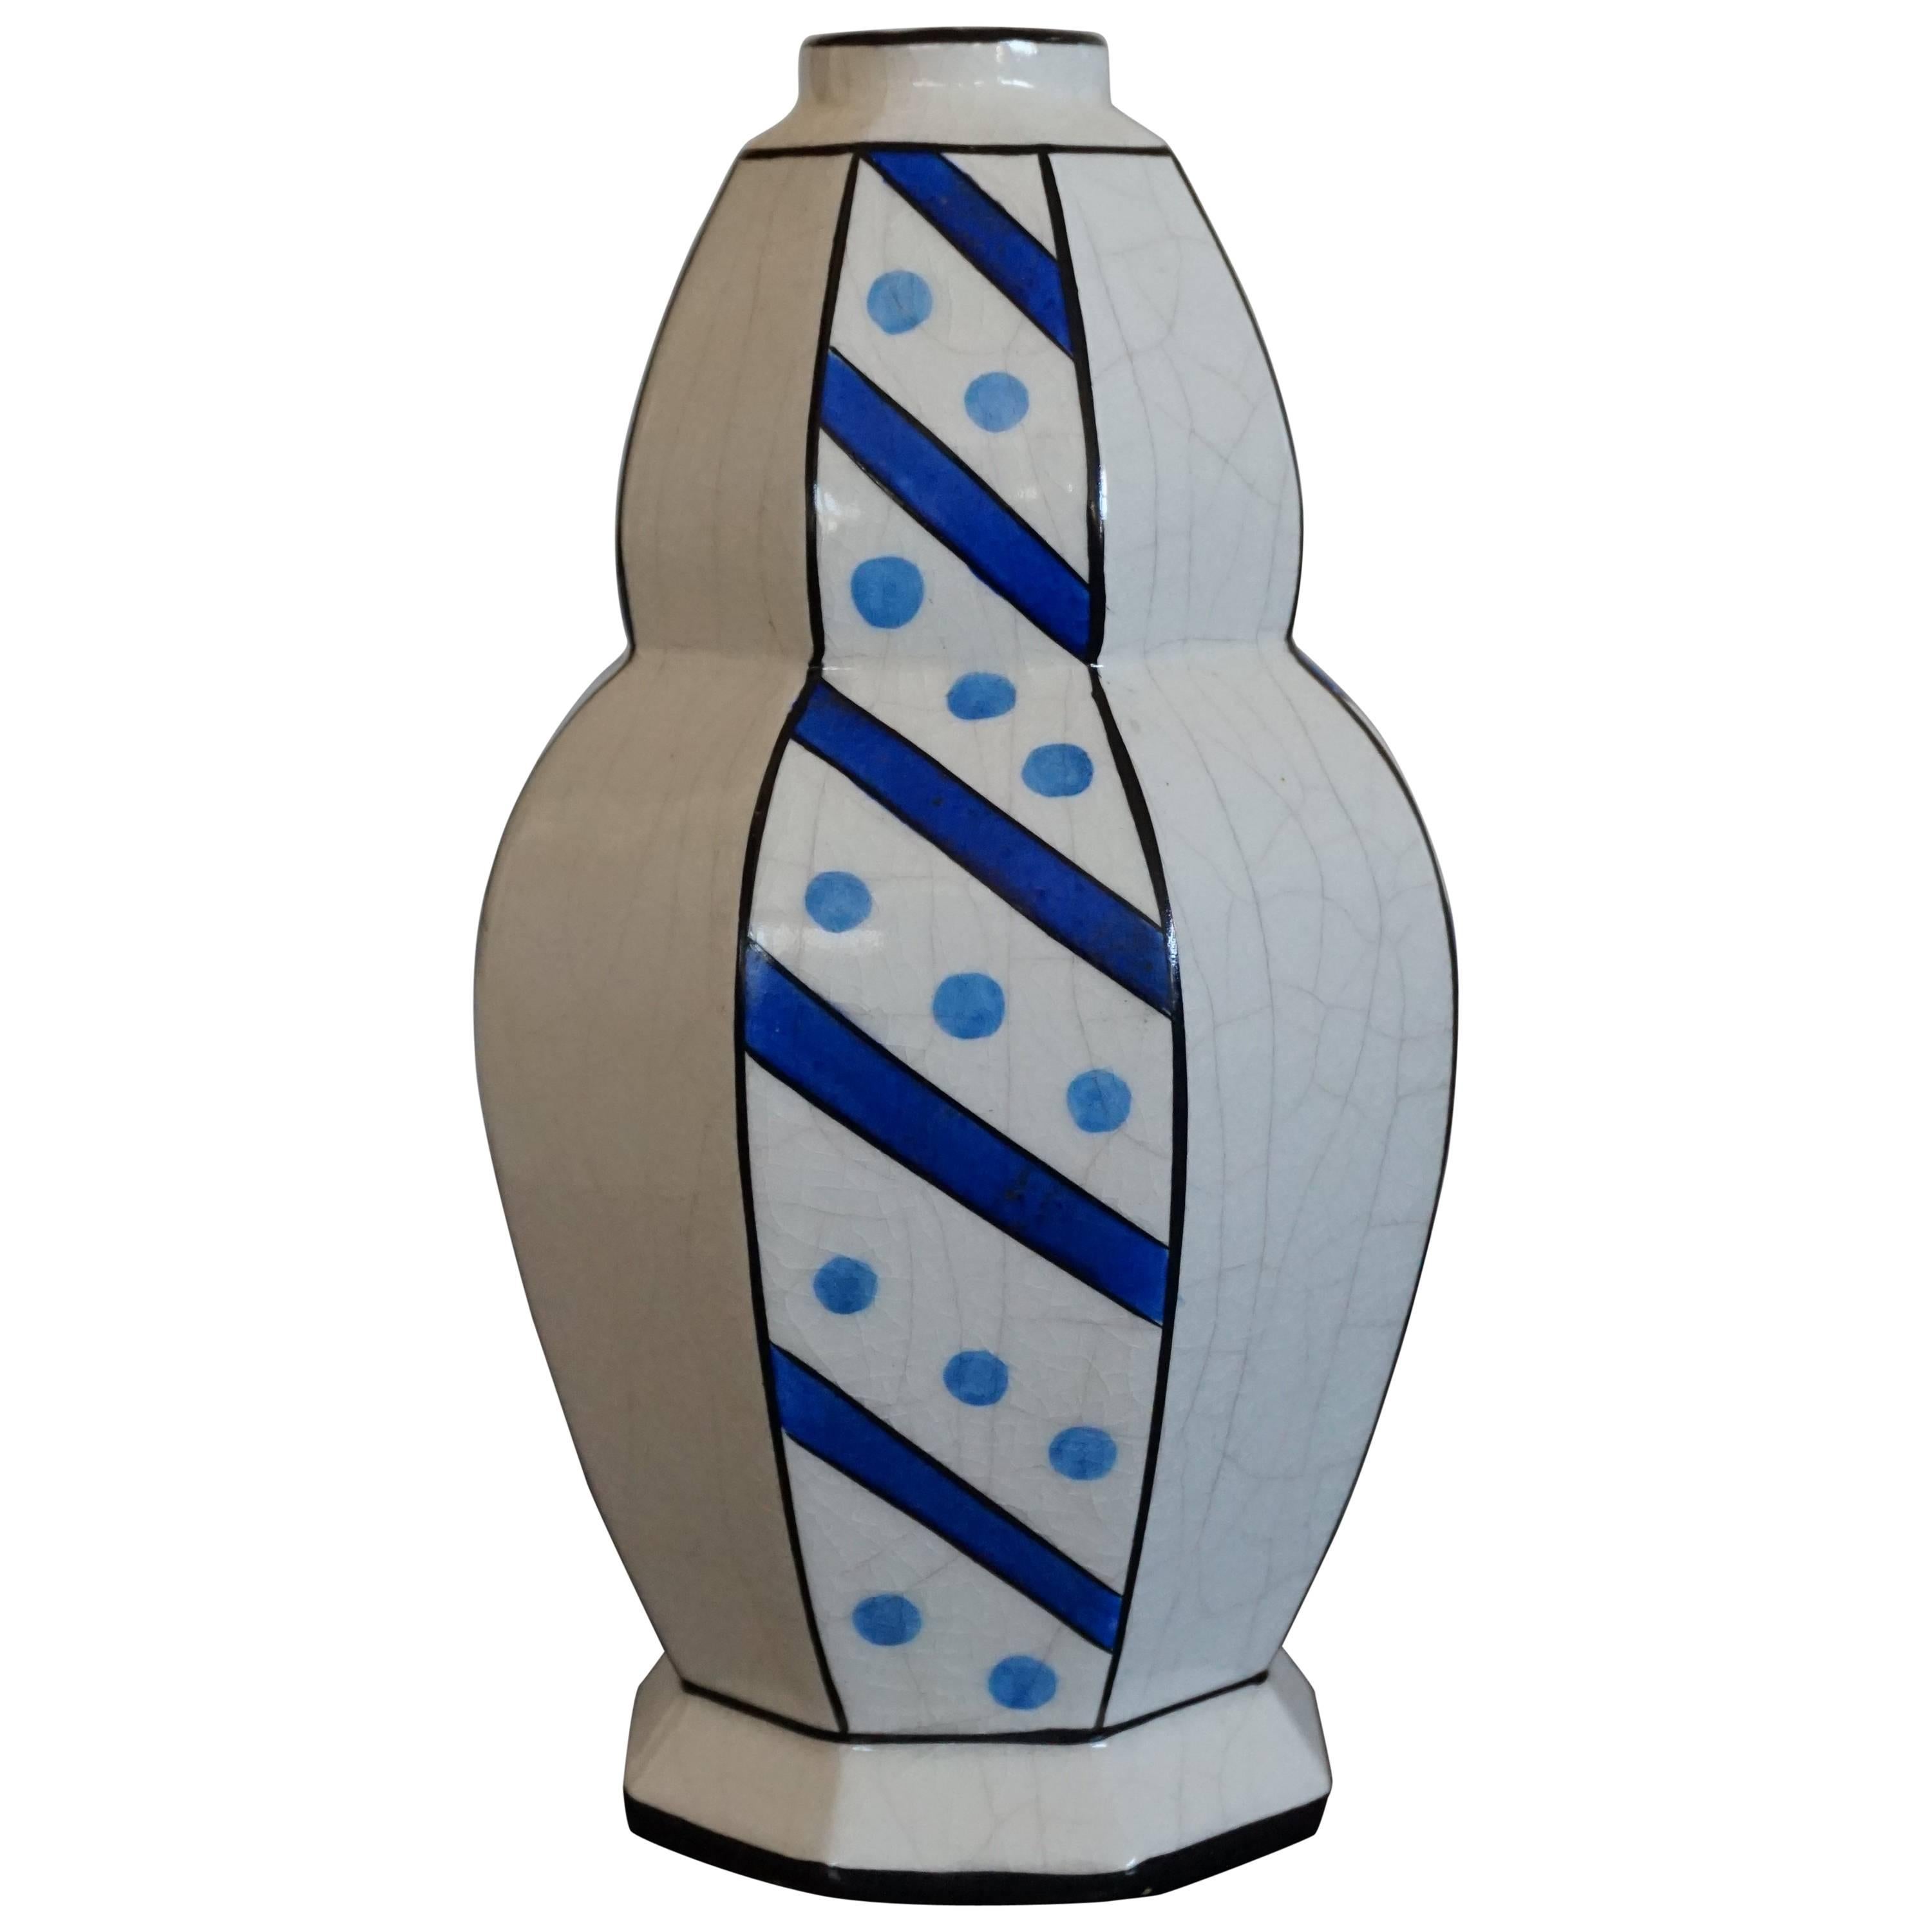 Vase de design Art Déco émaillé attribué à Charles Catteau à pois et rayures bleus